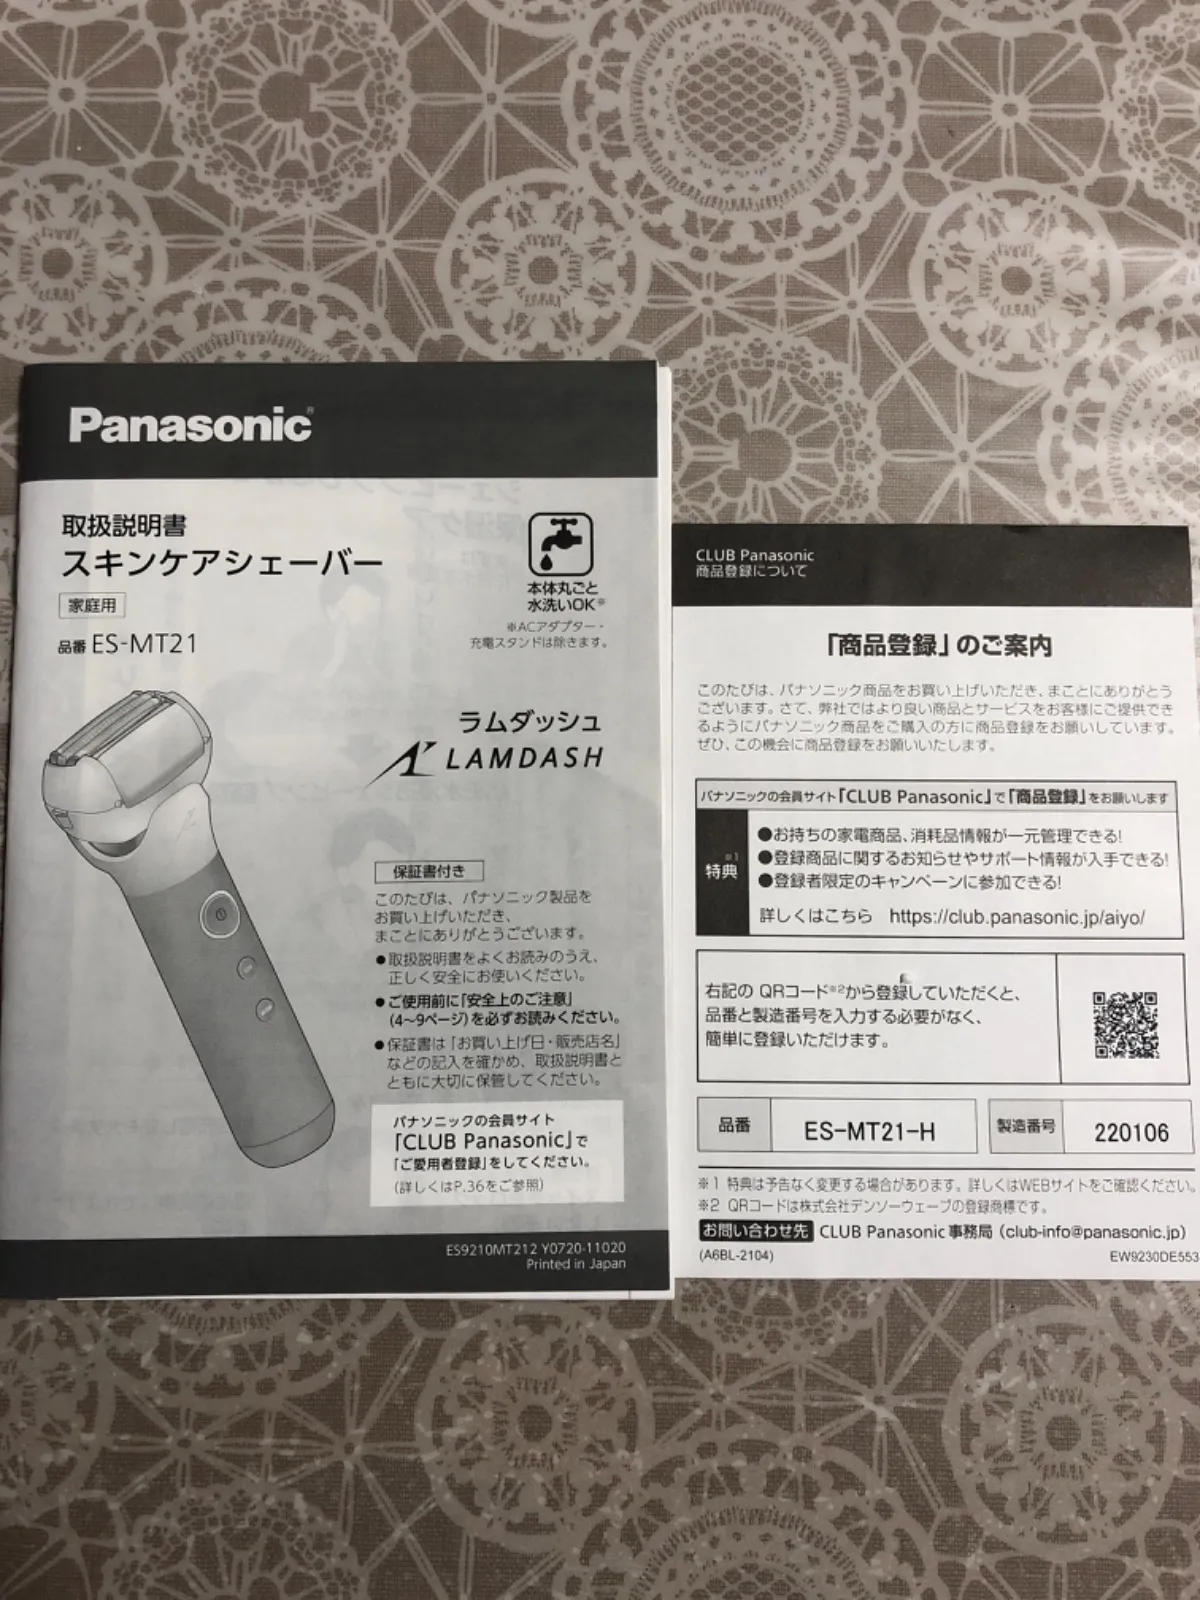 Panasonic ラムダッシュ スキンケアシェーバー【ES-MT21-H